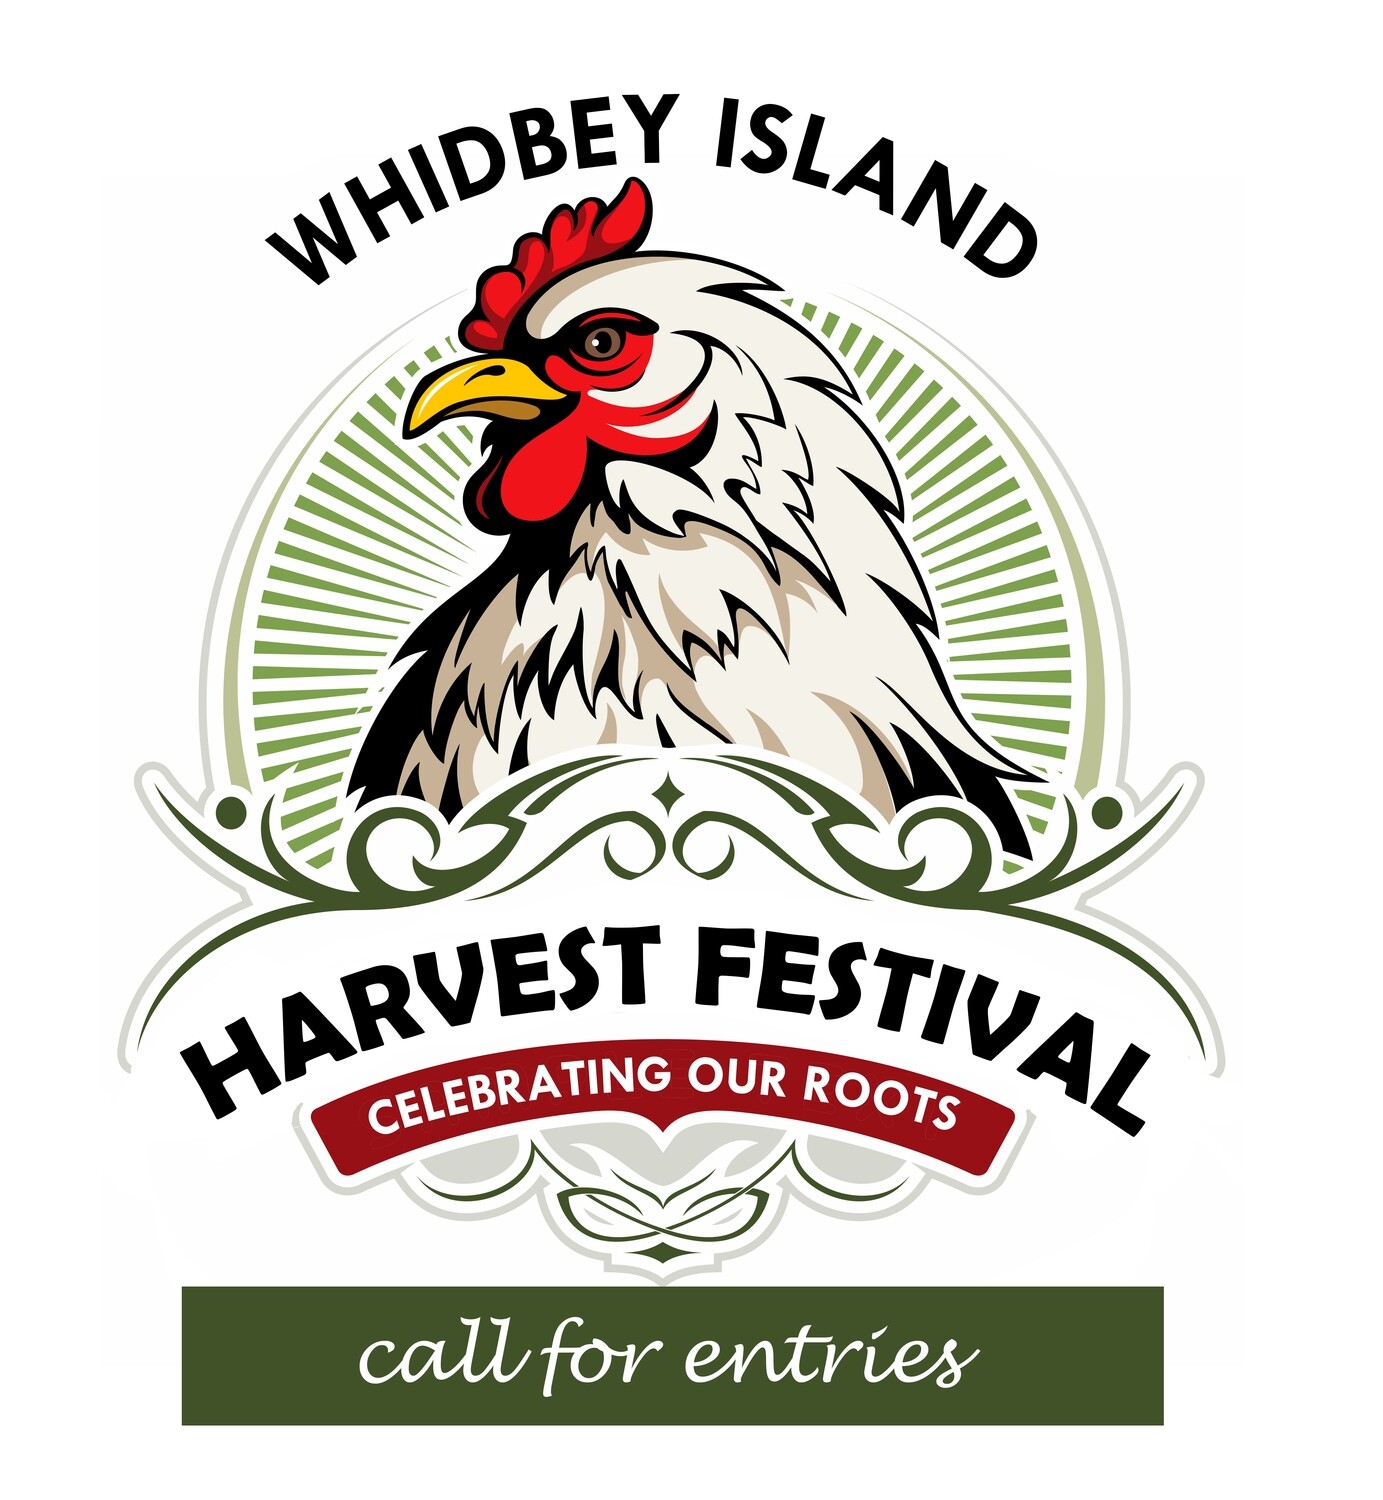 Harvest Festival Registration Fee